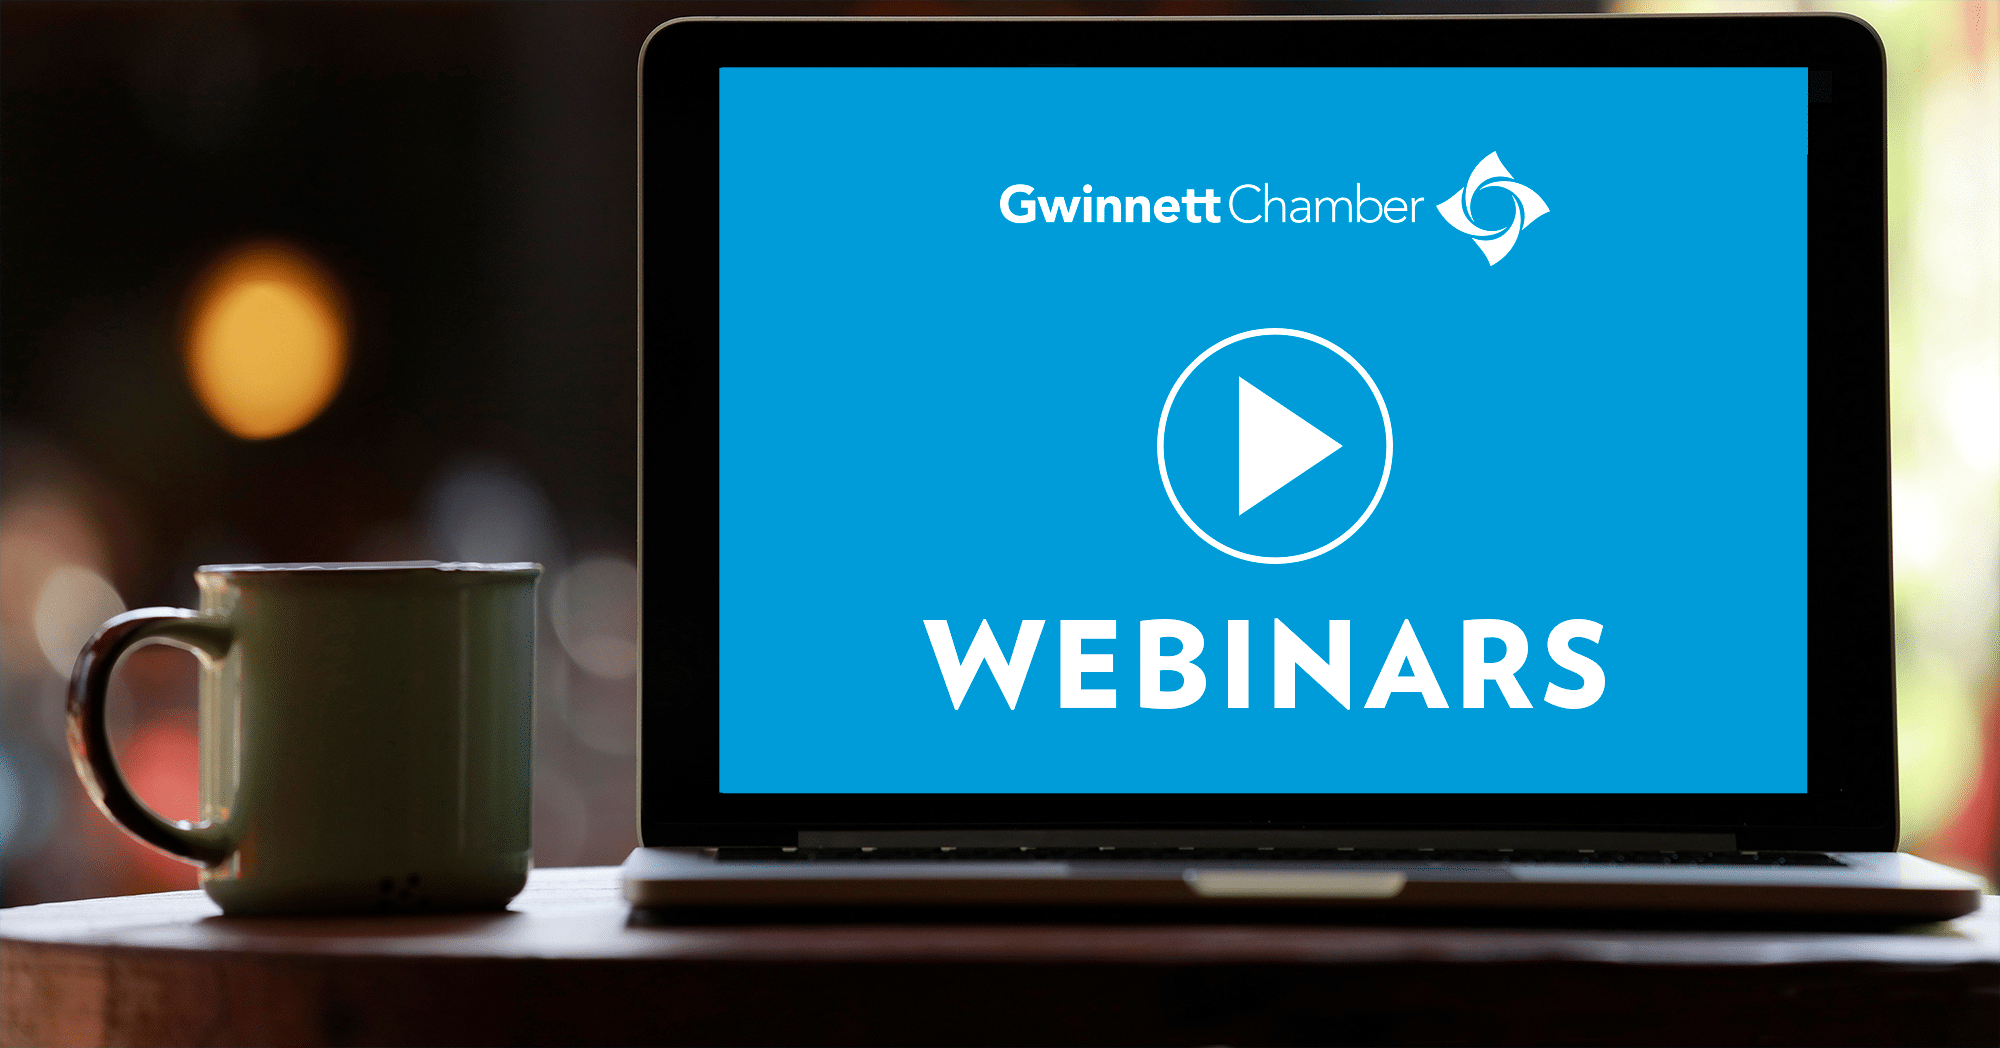 Access recordings of Gwinnett Chamber webinars